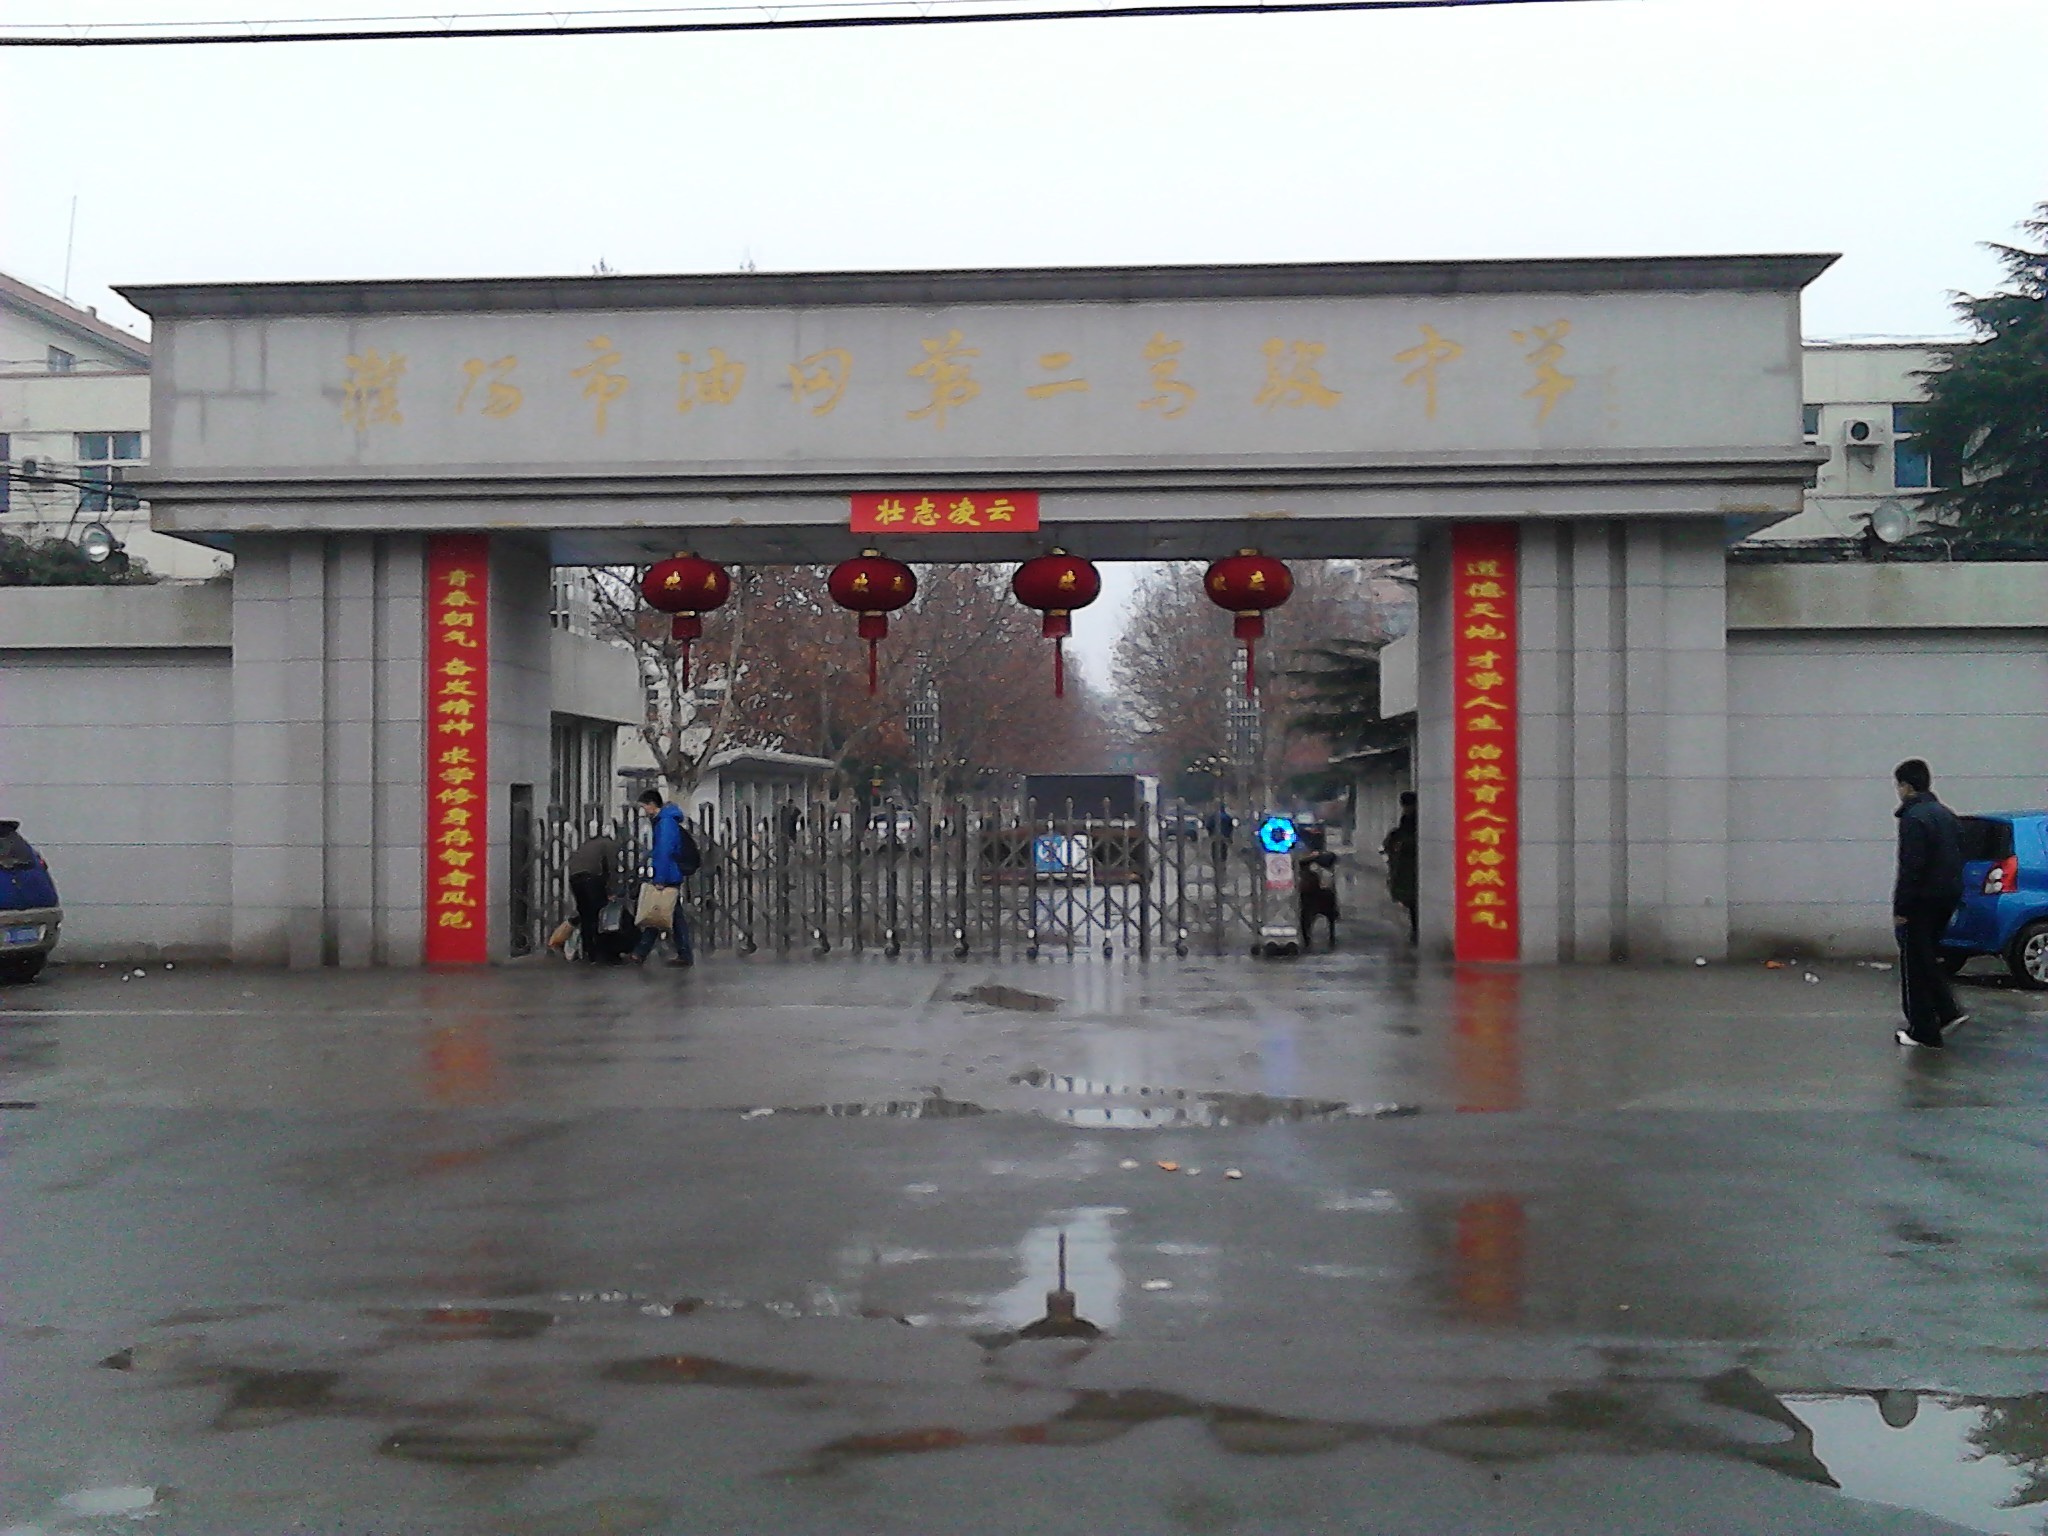 行走河南·读懂中国 | 来濮阳看看“中华第一龙”里的甲骨文写法构型 - 河南省文化和旅游厅